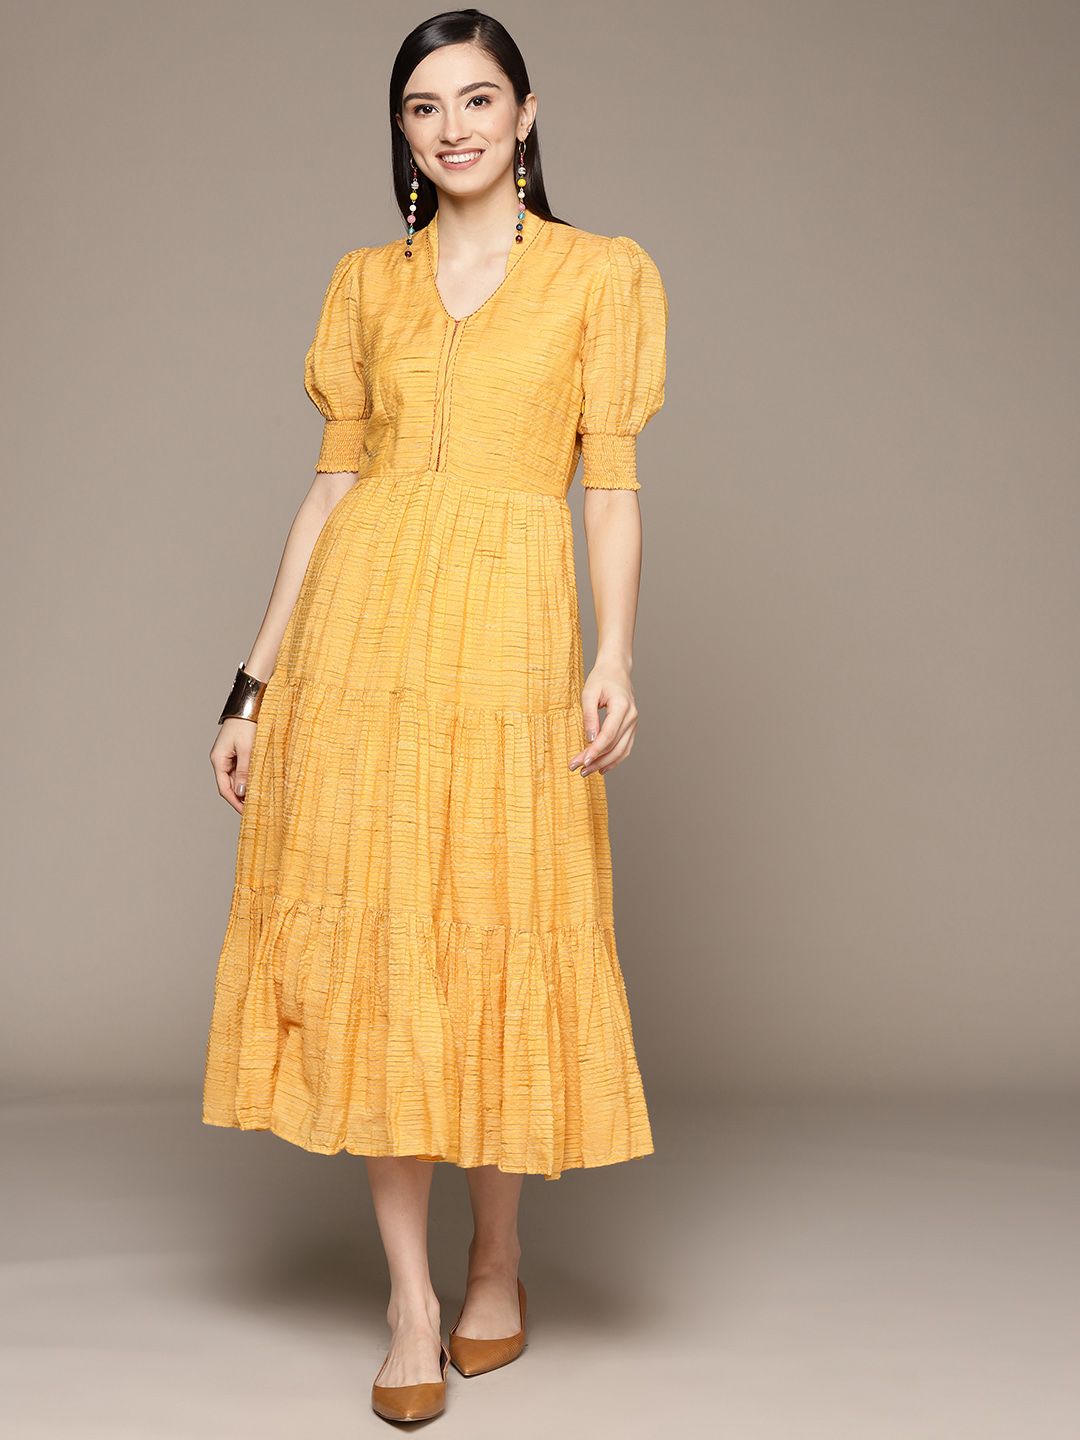 Ritu Kumar Mustard Yellow Woven Design Tiered A-Line Maxi Dress Price in India